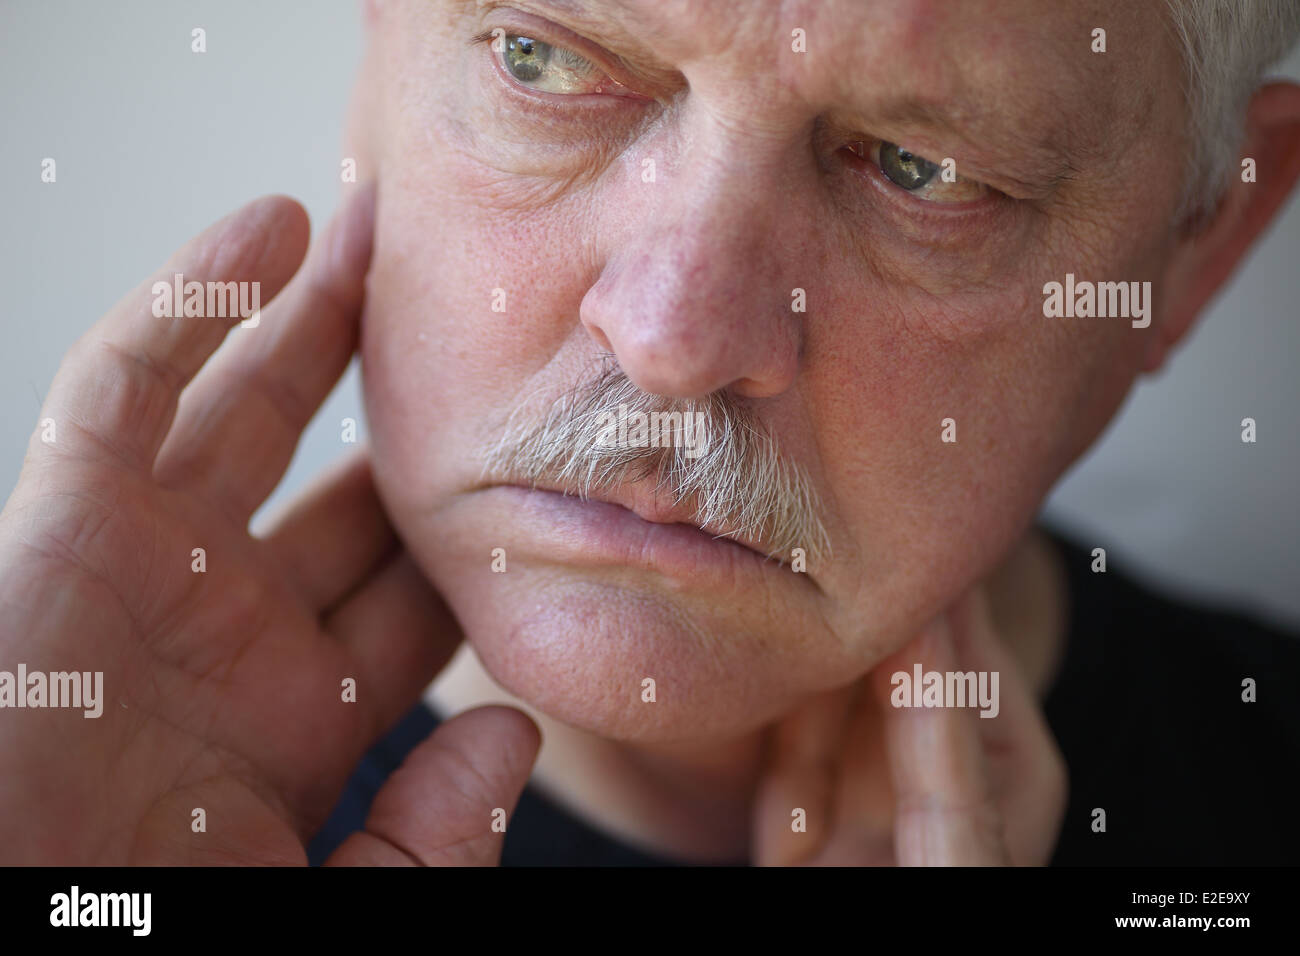 senior man touches his sore jaw area Stock Photo